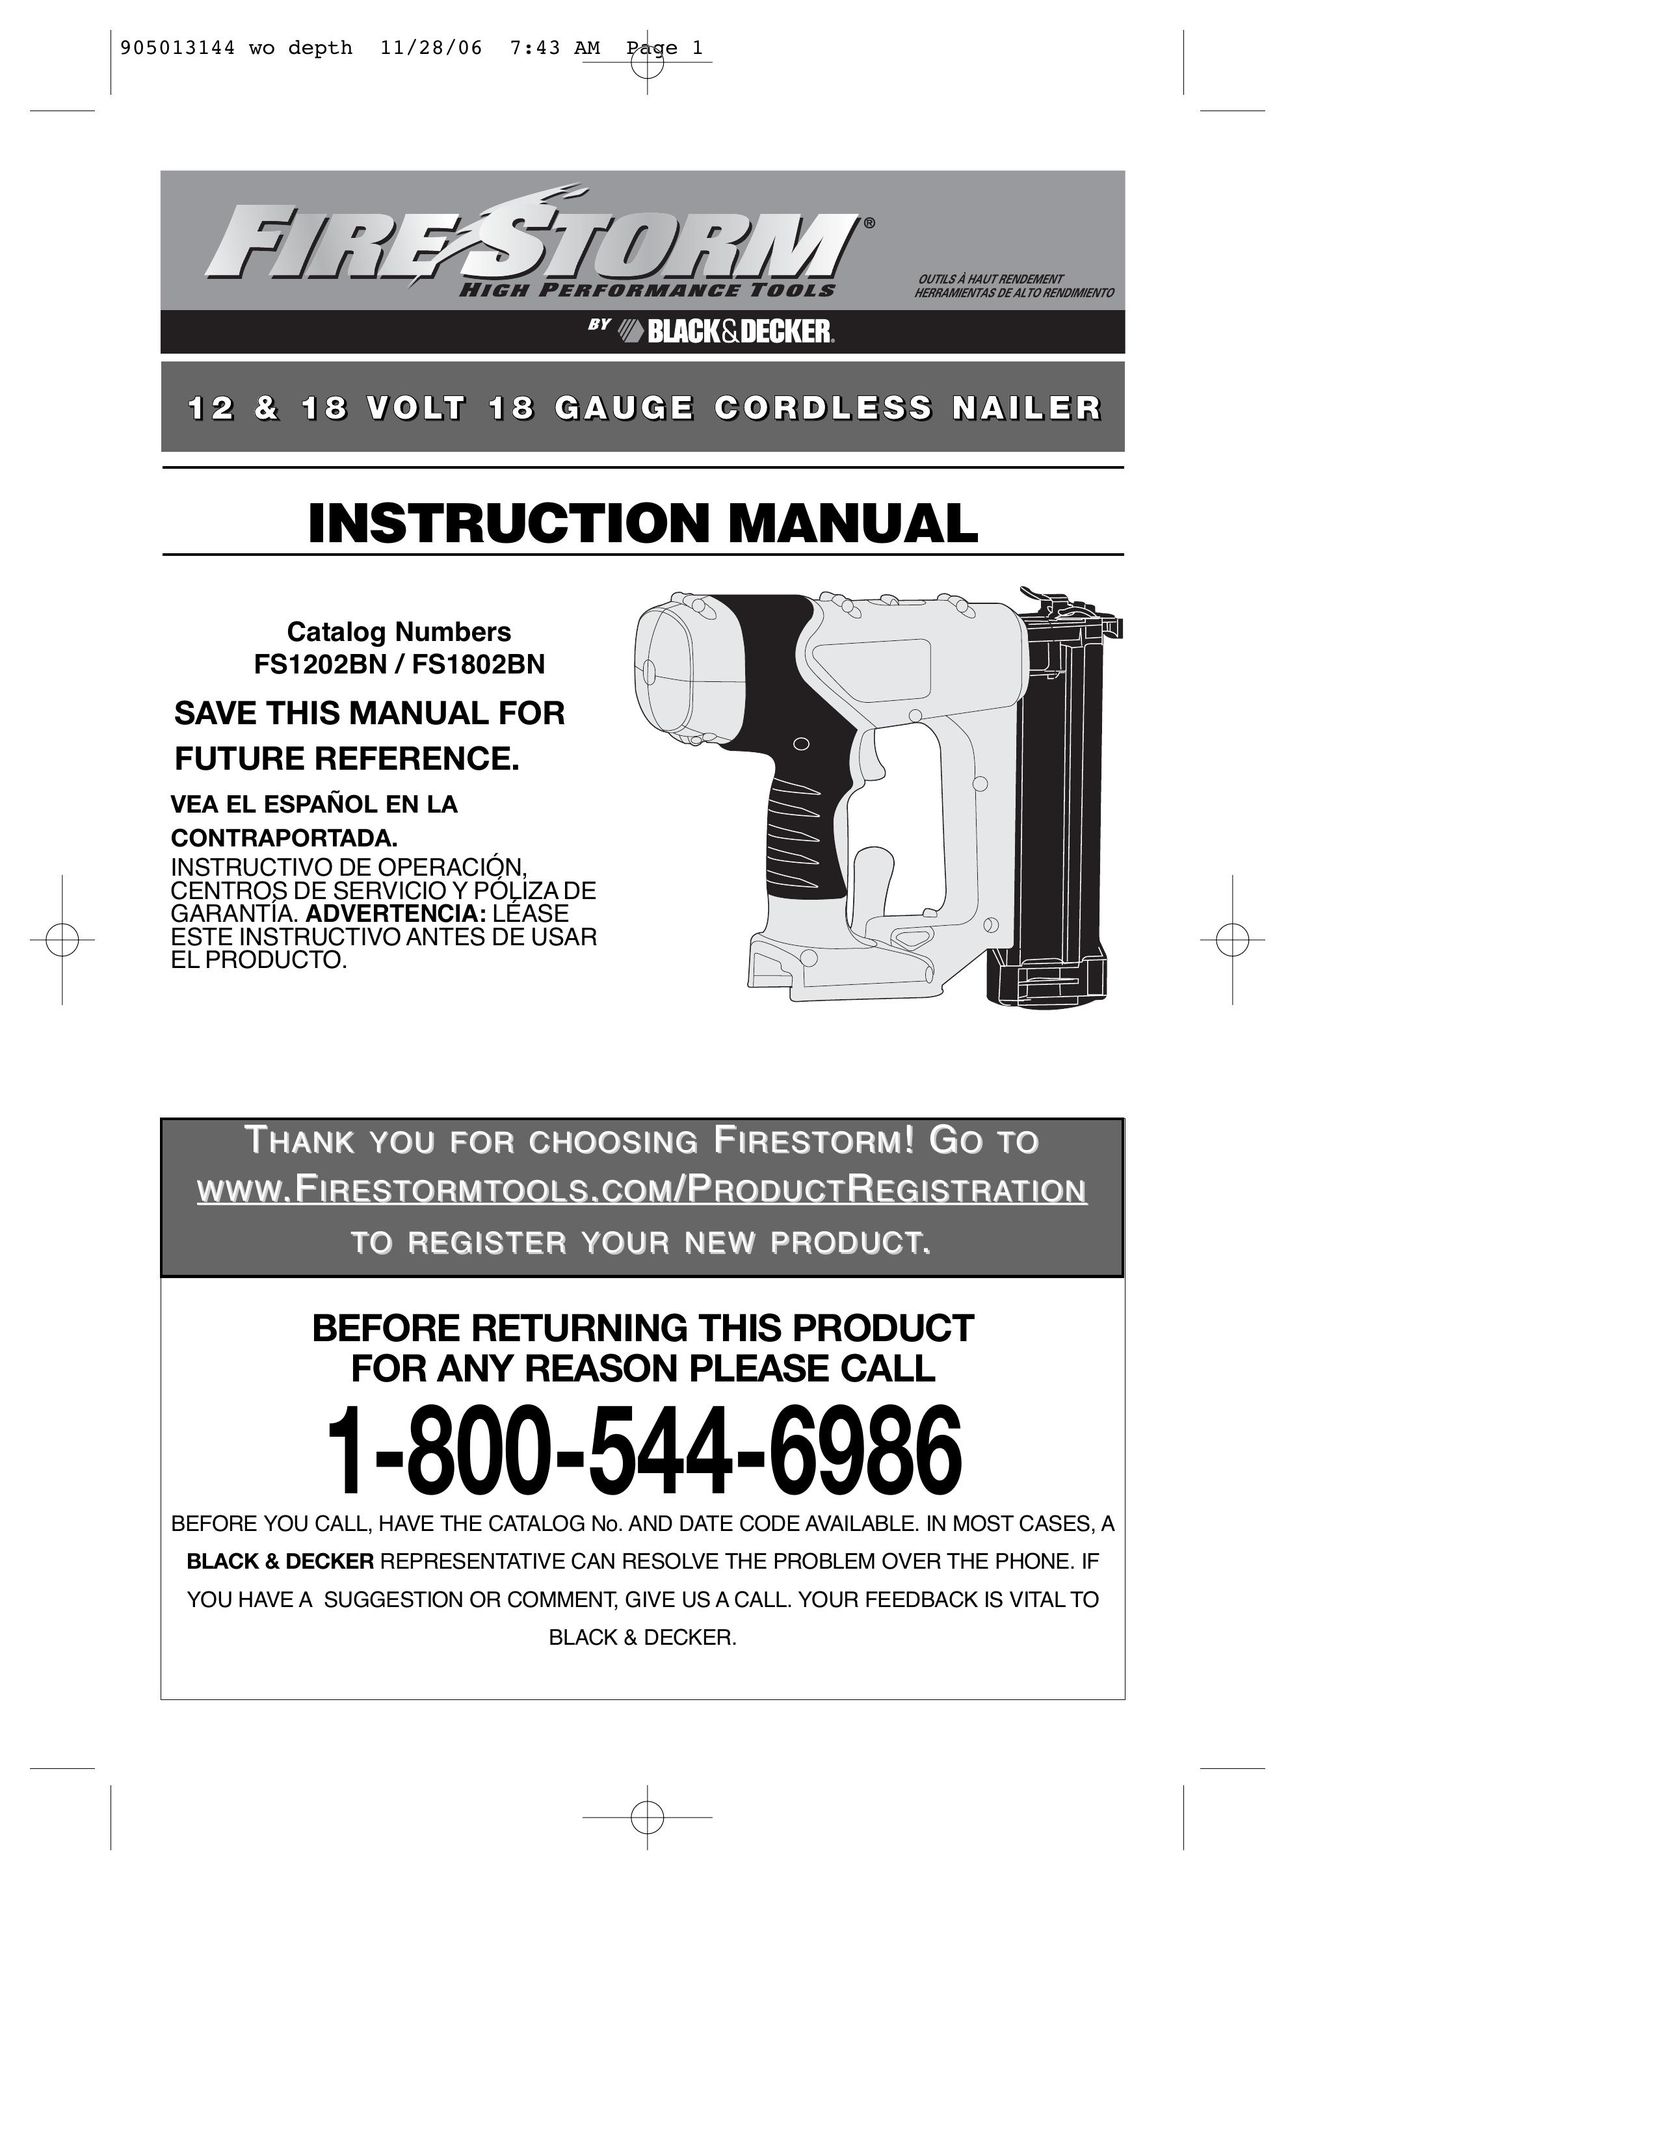 Black & Decker FS1202BN Nail Gun User Manual